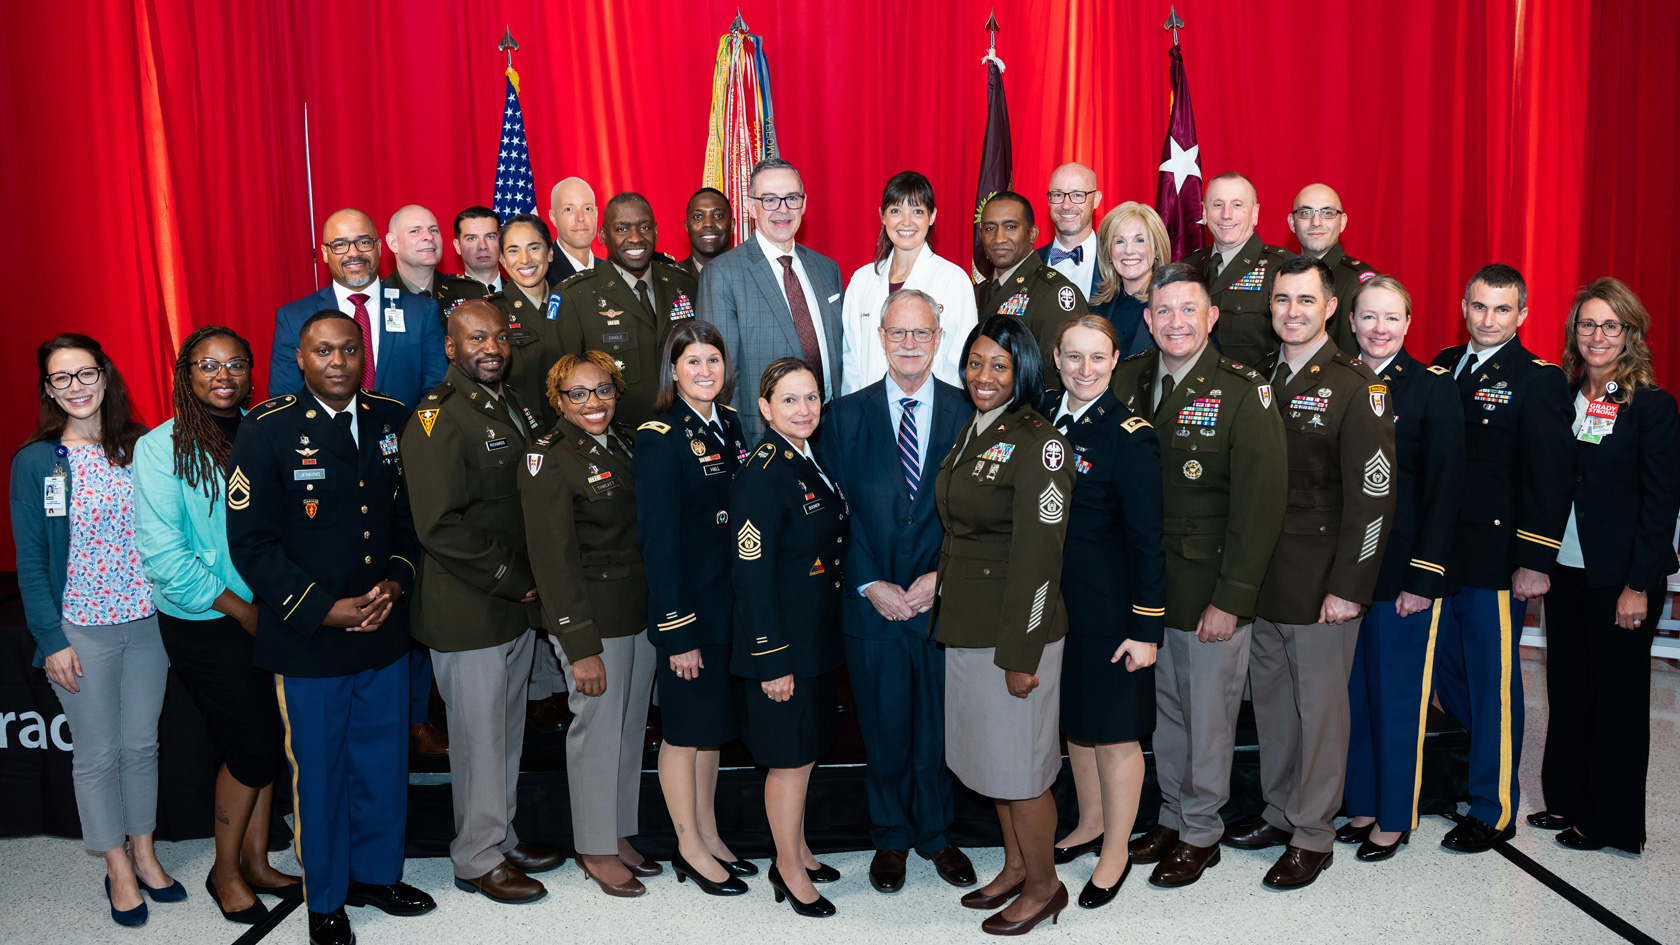 Representatives of the Grady Trauma Center and the U.S. Military.